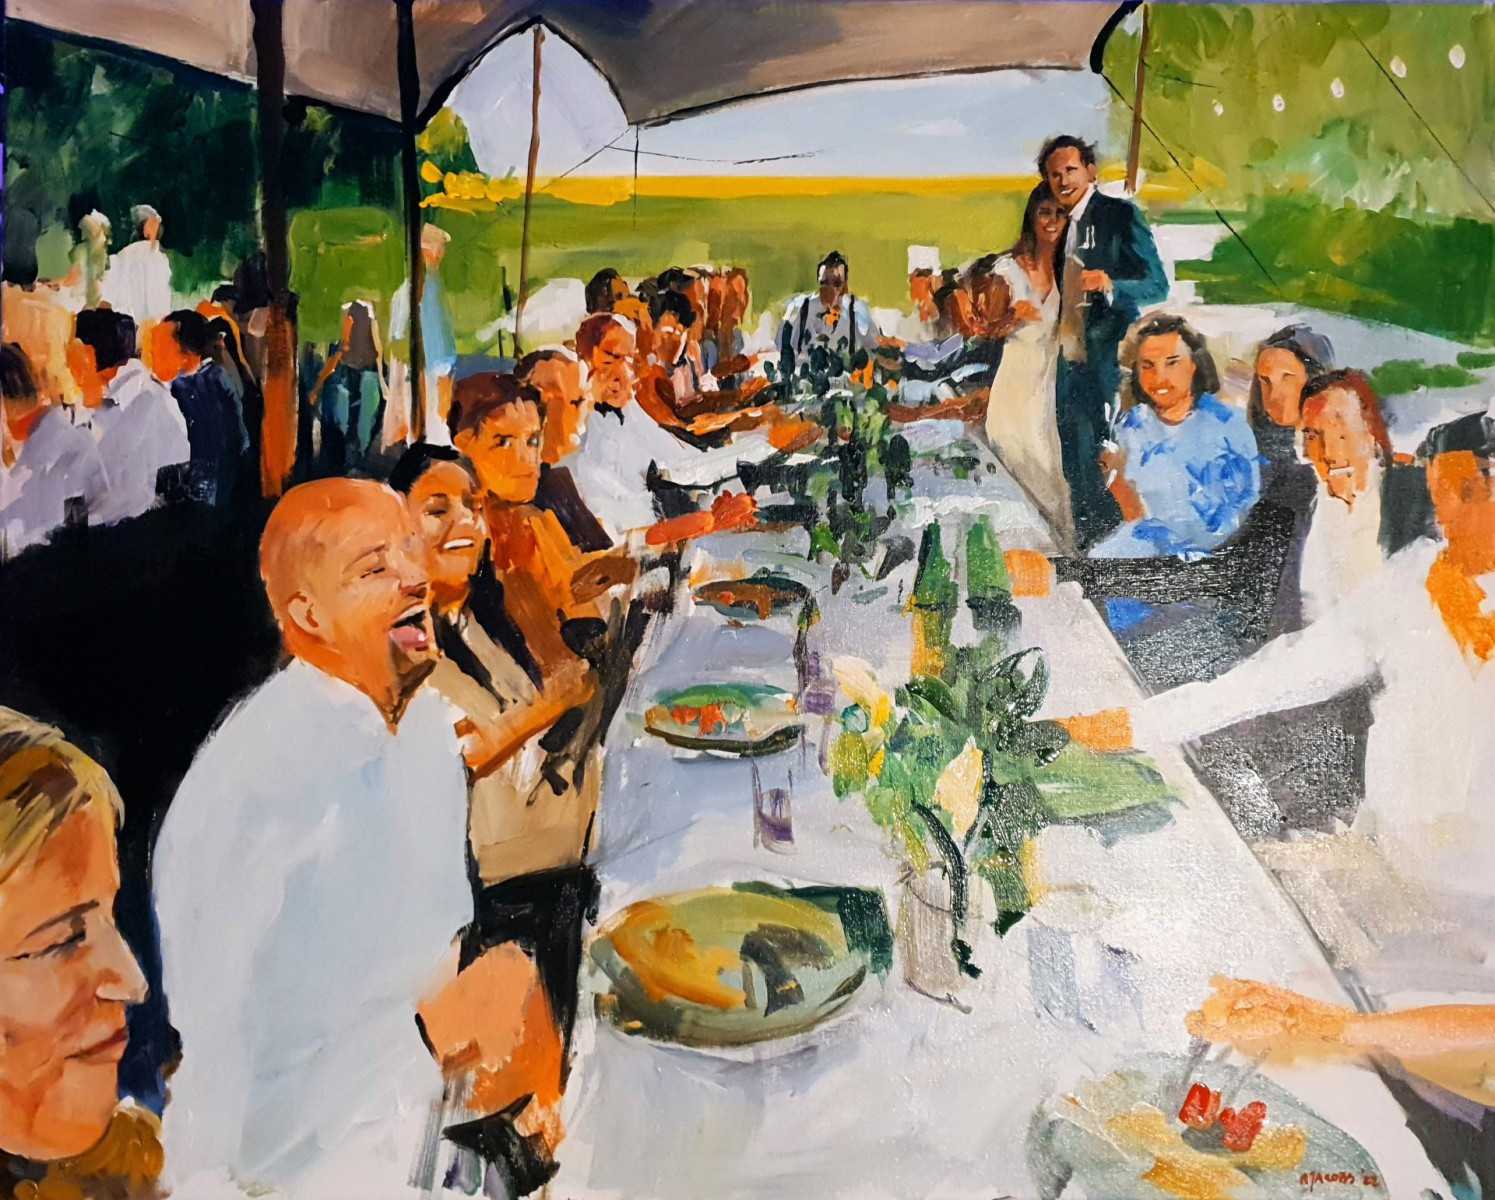 Laat je verrassen door heerlijk eten en geniet van de gezelligheid terwijl Rob Jacobs live schildert tijdens dit diner in Maasland, Zuid-Holland.